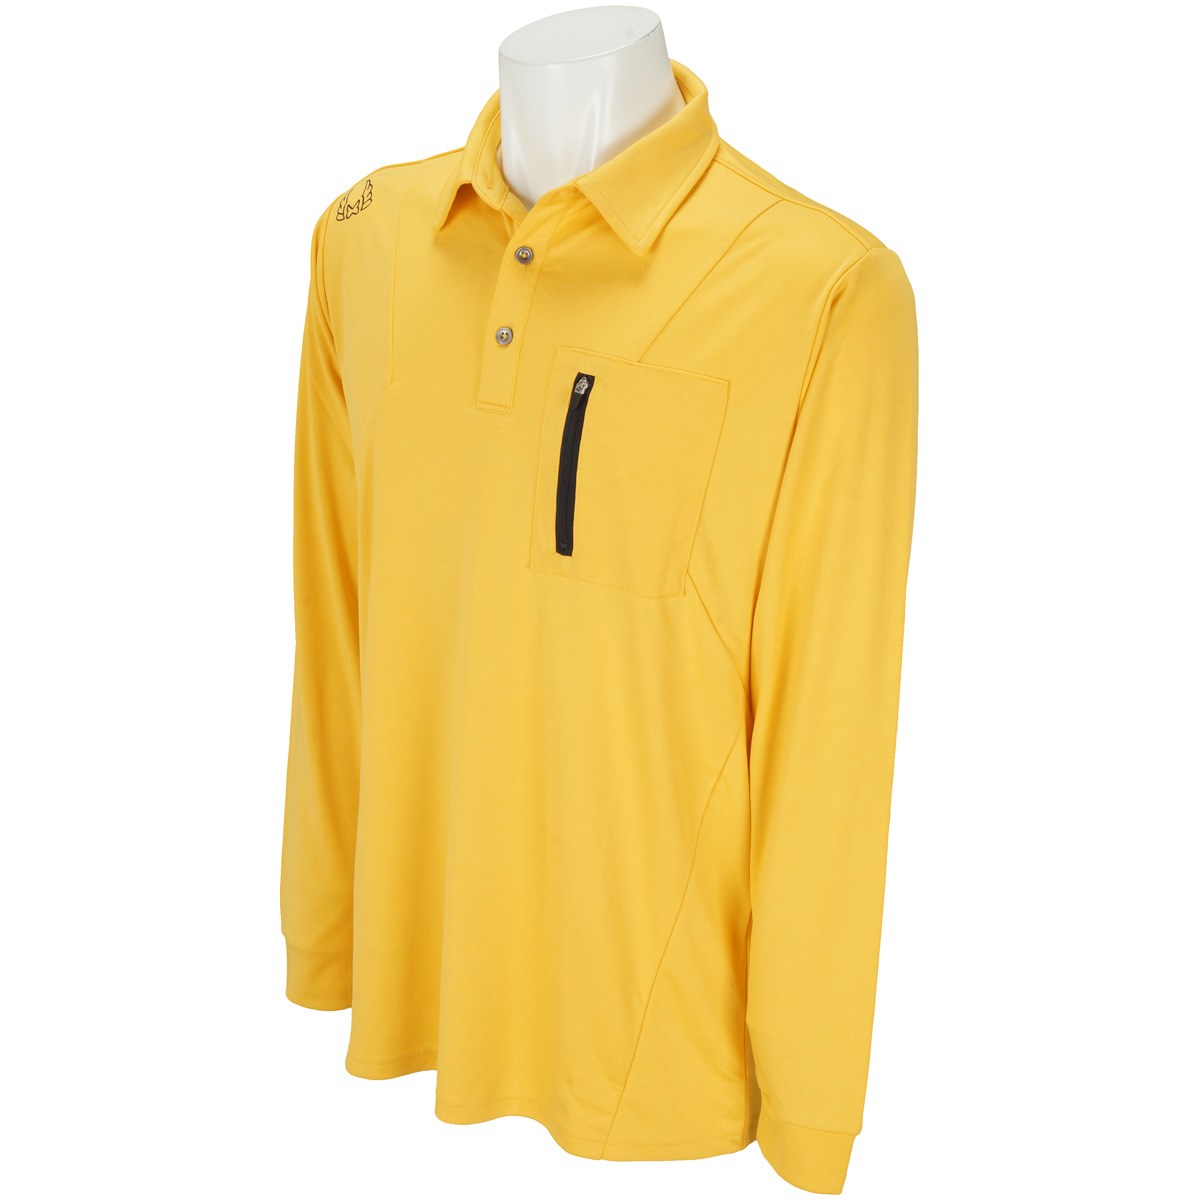  [アウトレット] [在庫限りのお買い得商品] フラットゴルフ スムース切替長袖ポロシャツ ゴルフウェア